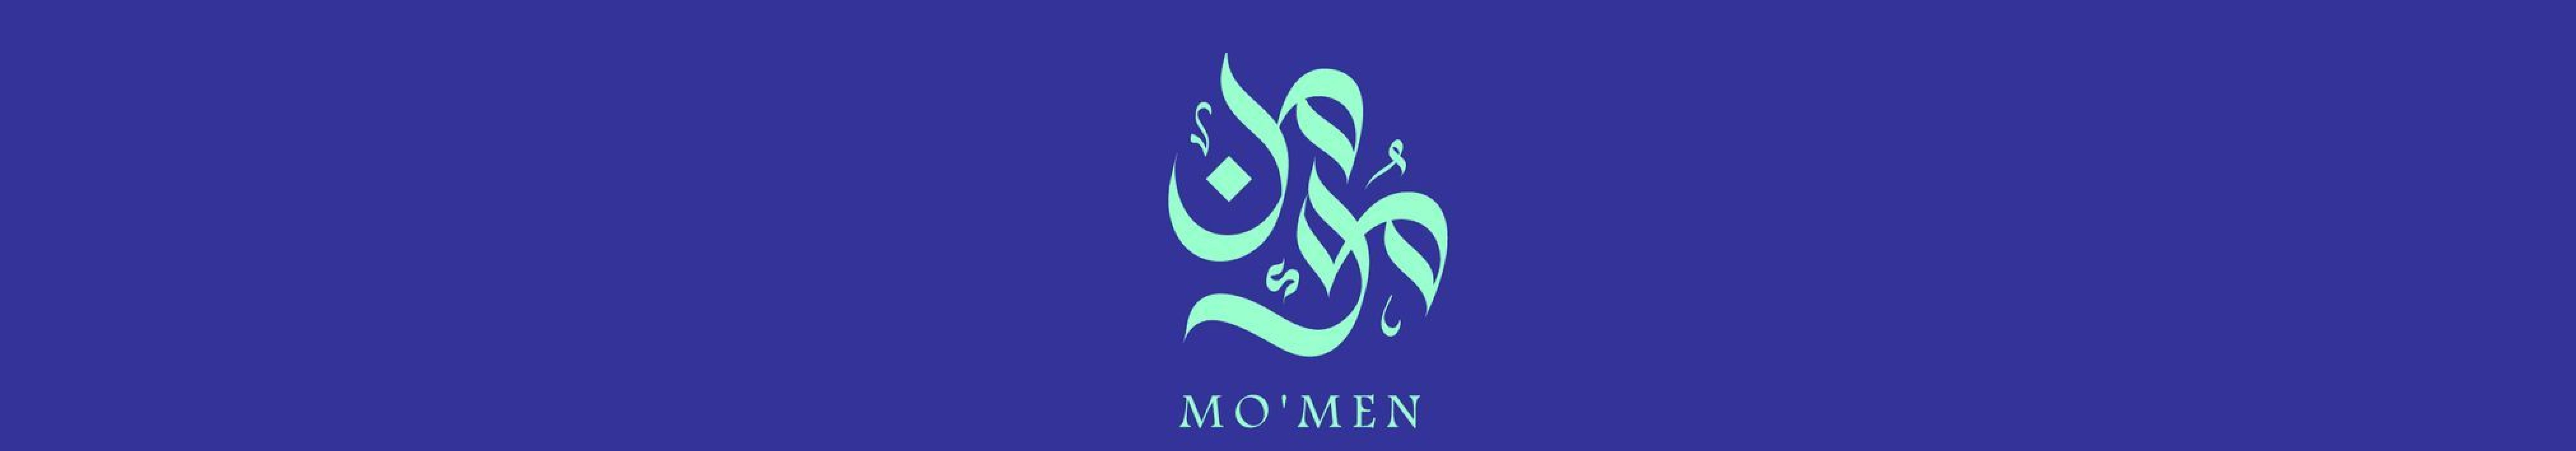 Momen Osman's profile banner